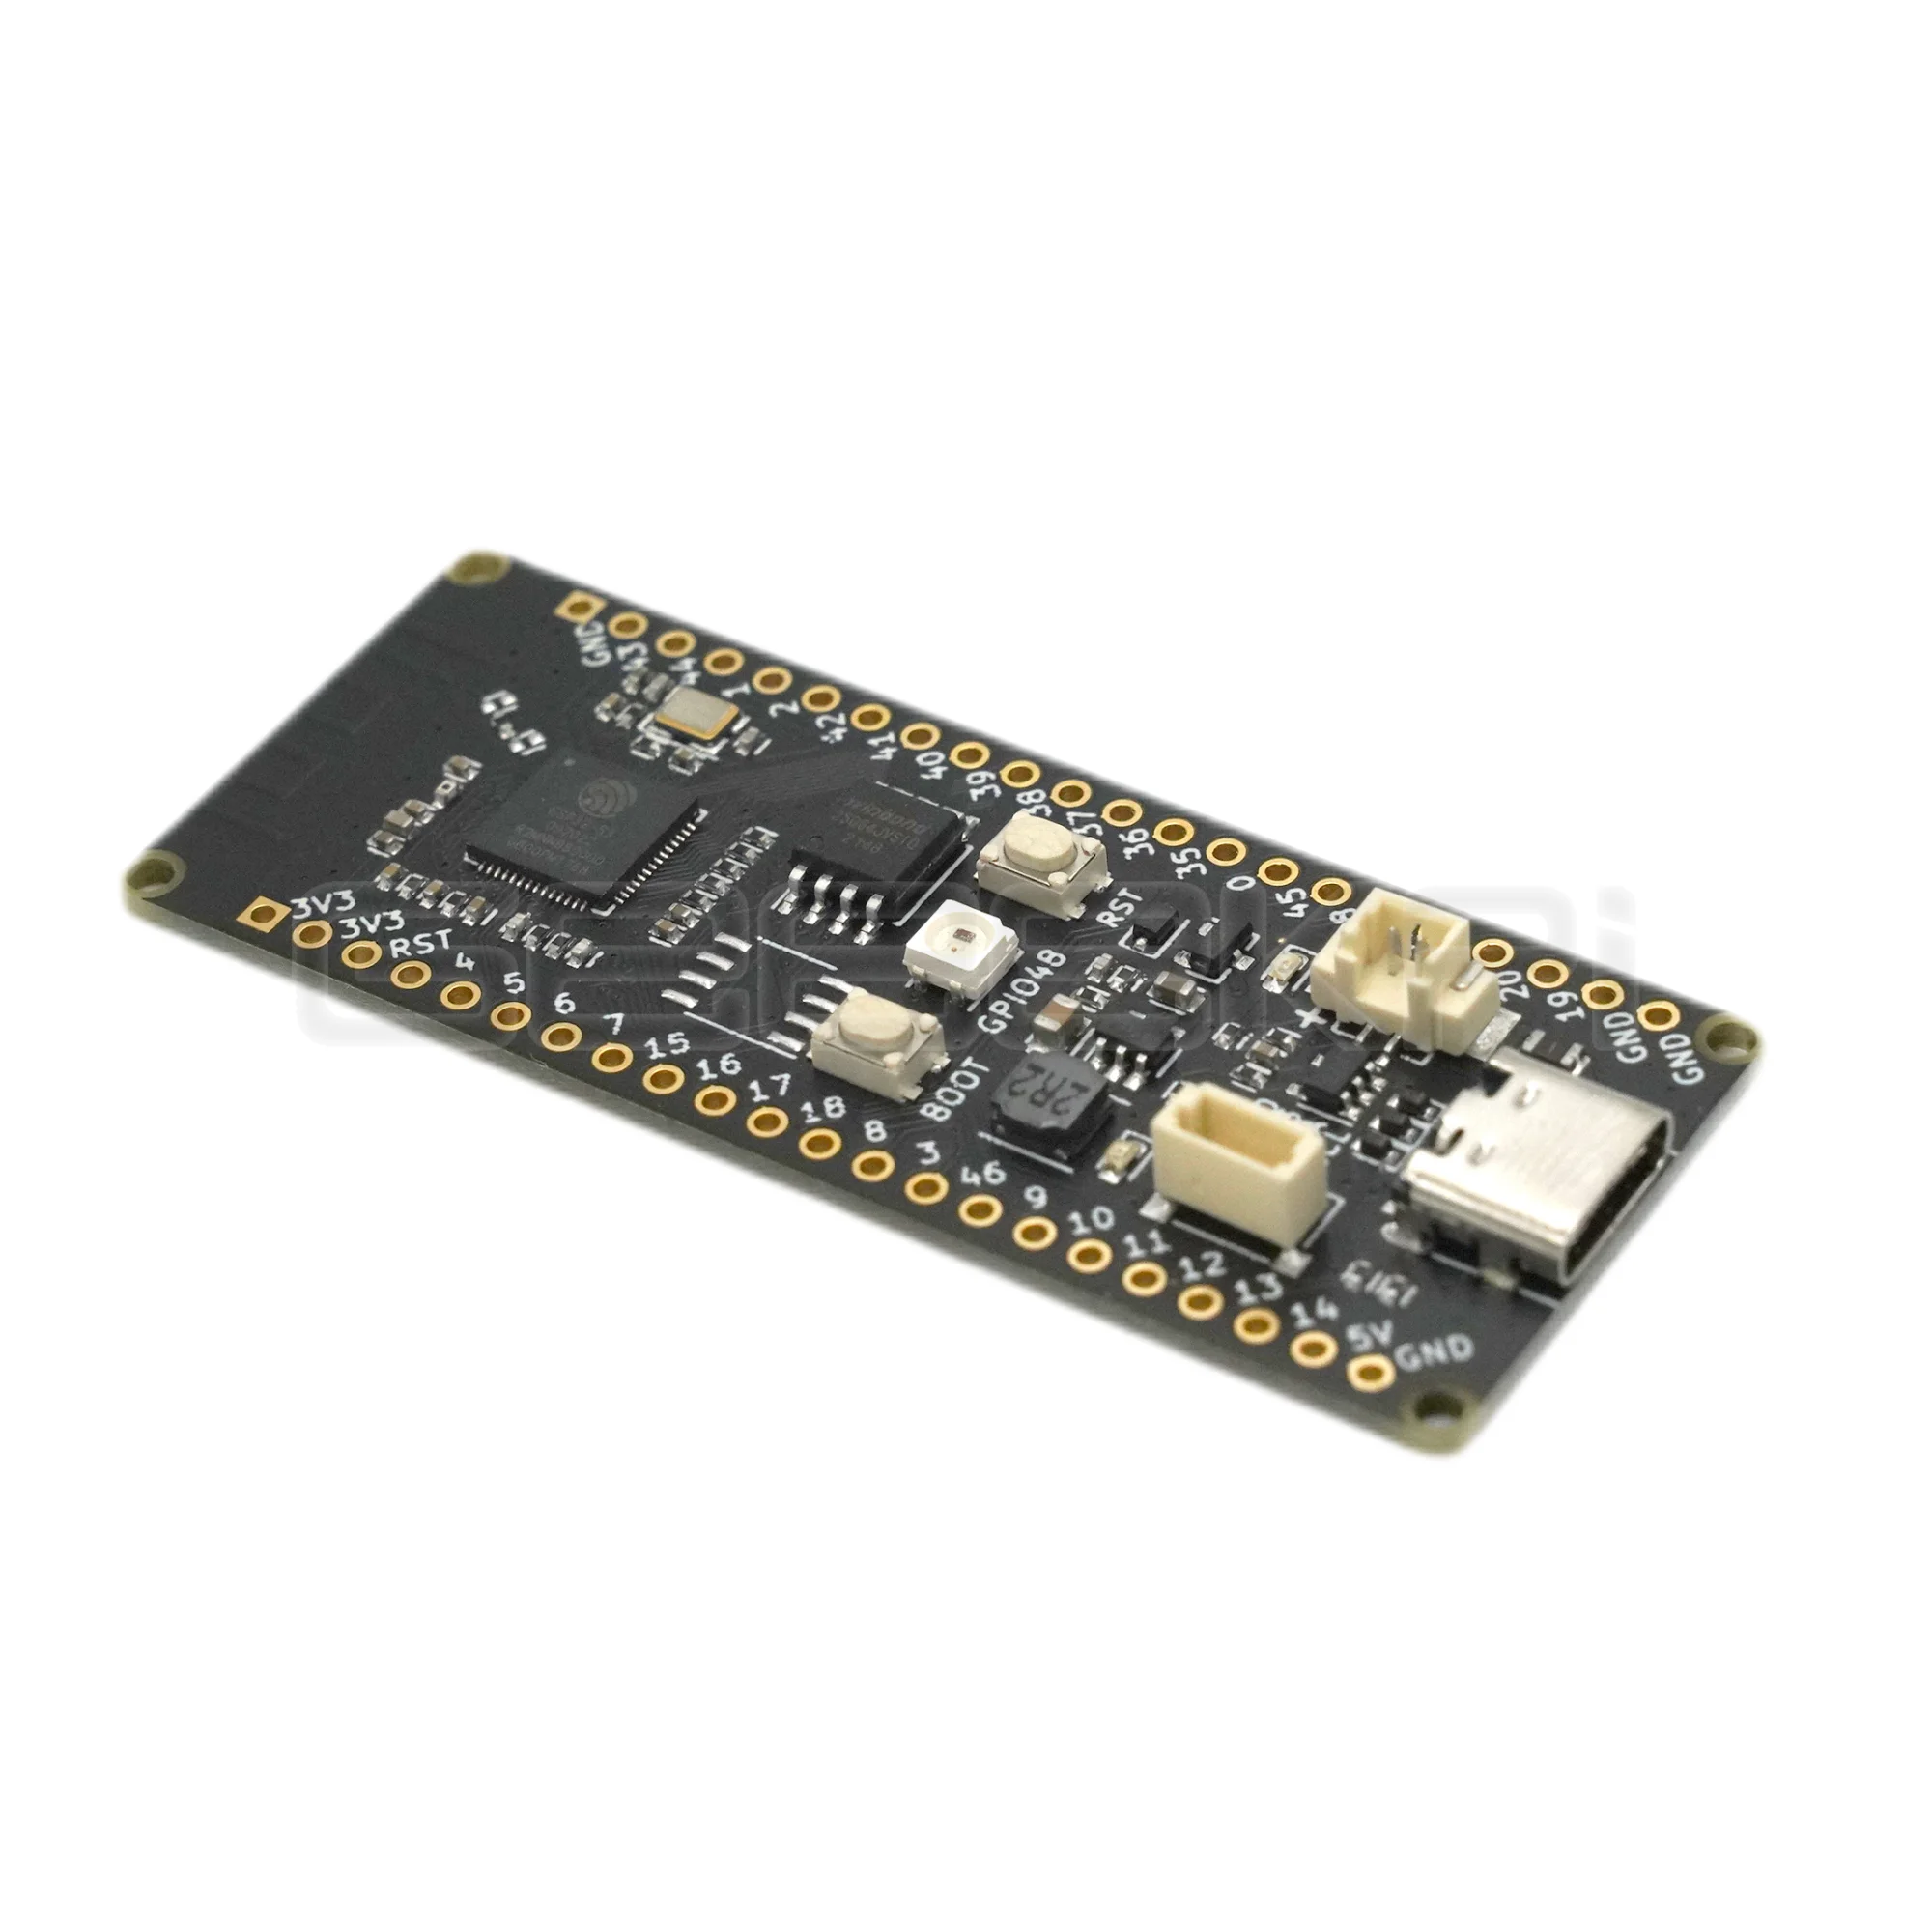 Originalna serija snage mikrokontrolera Banana Pi Leaf ESP32 S3, namijenjen za razvoj IoT 2